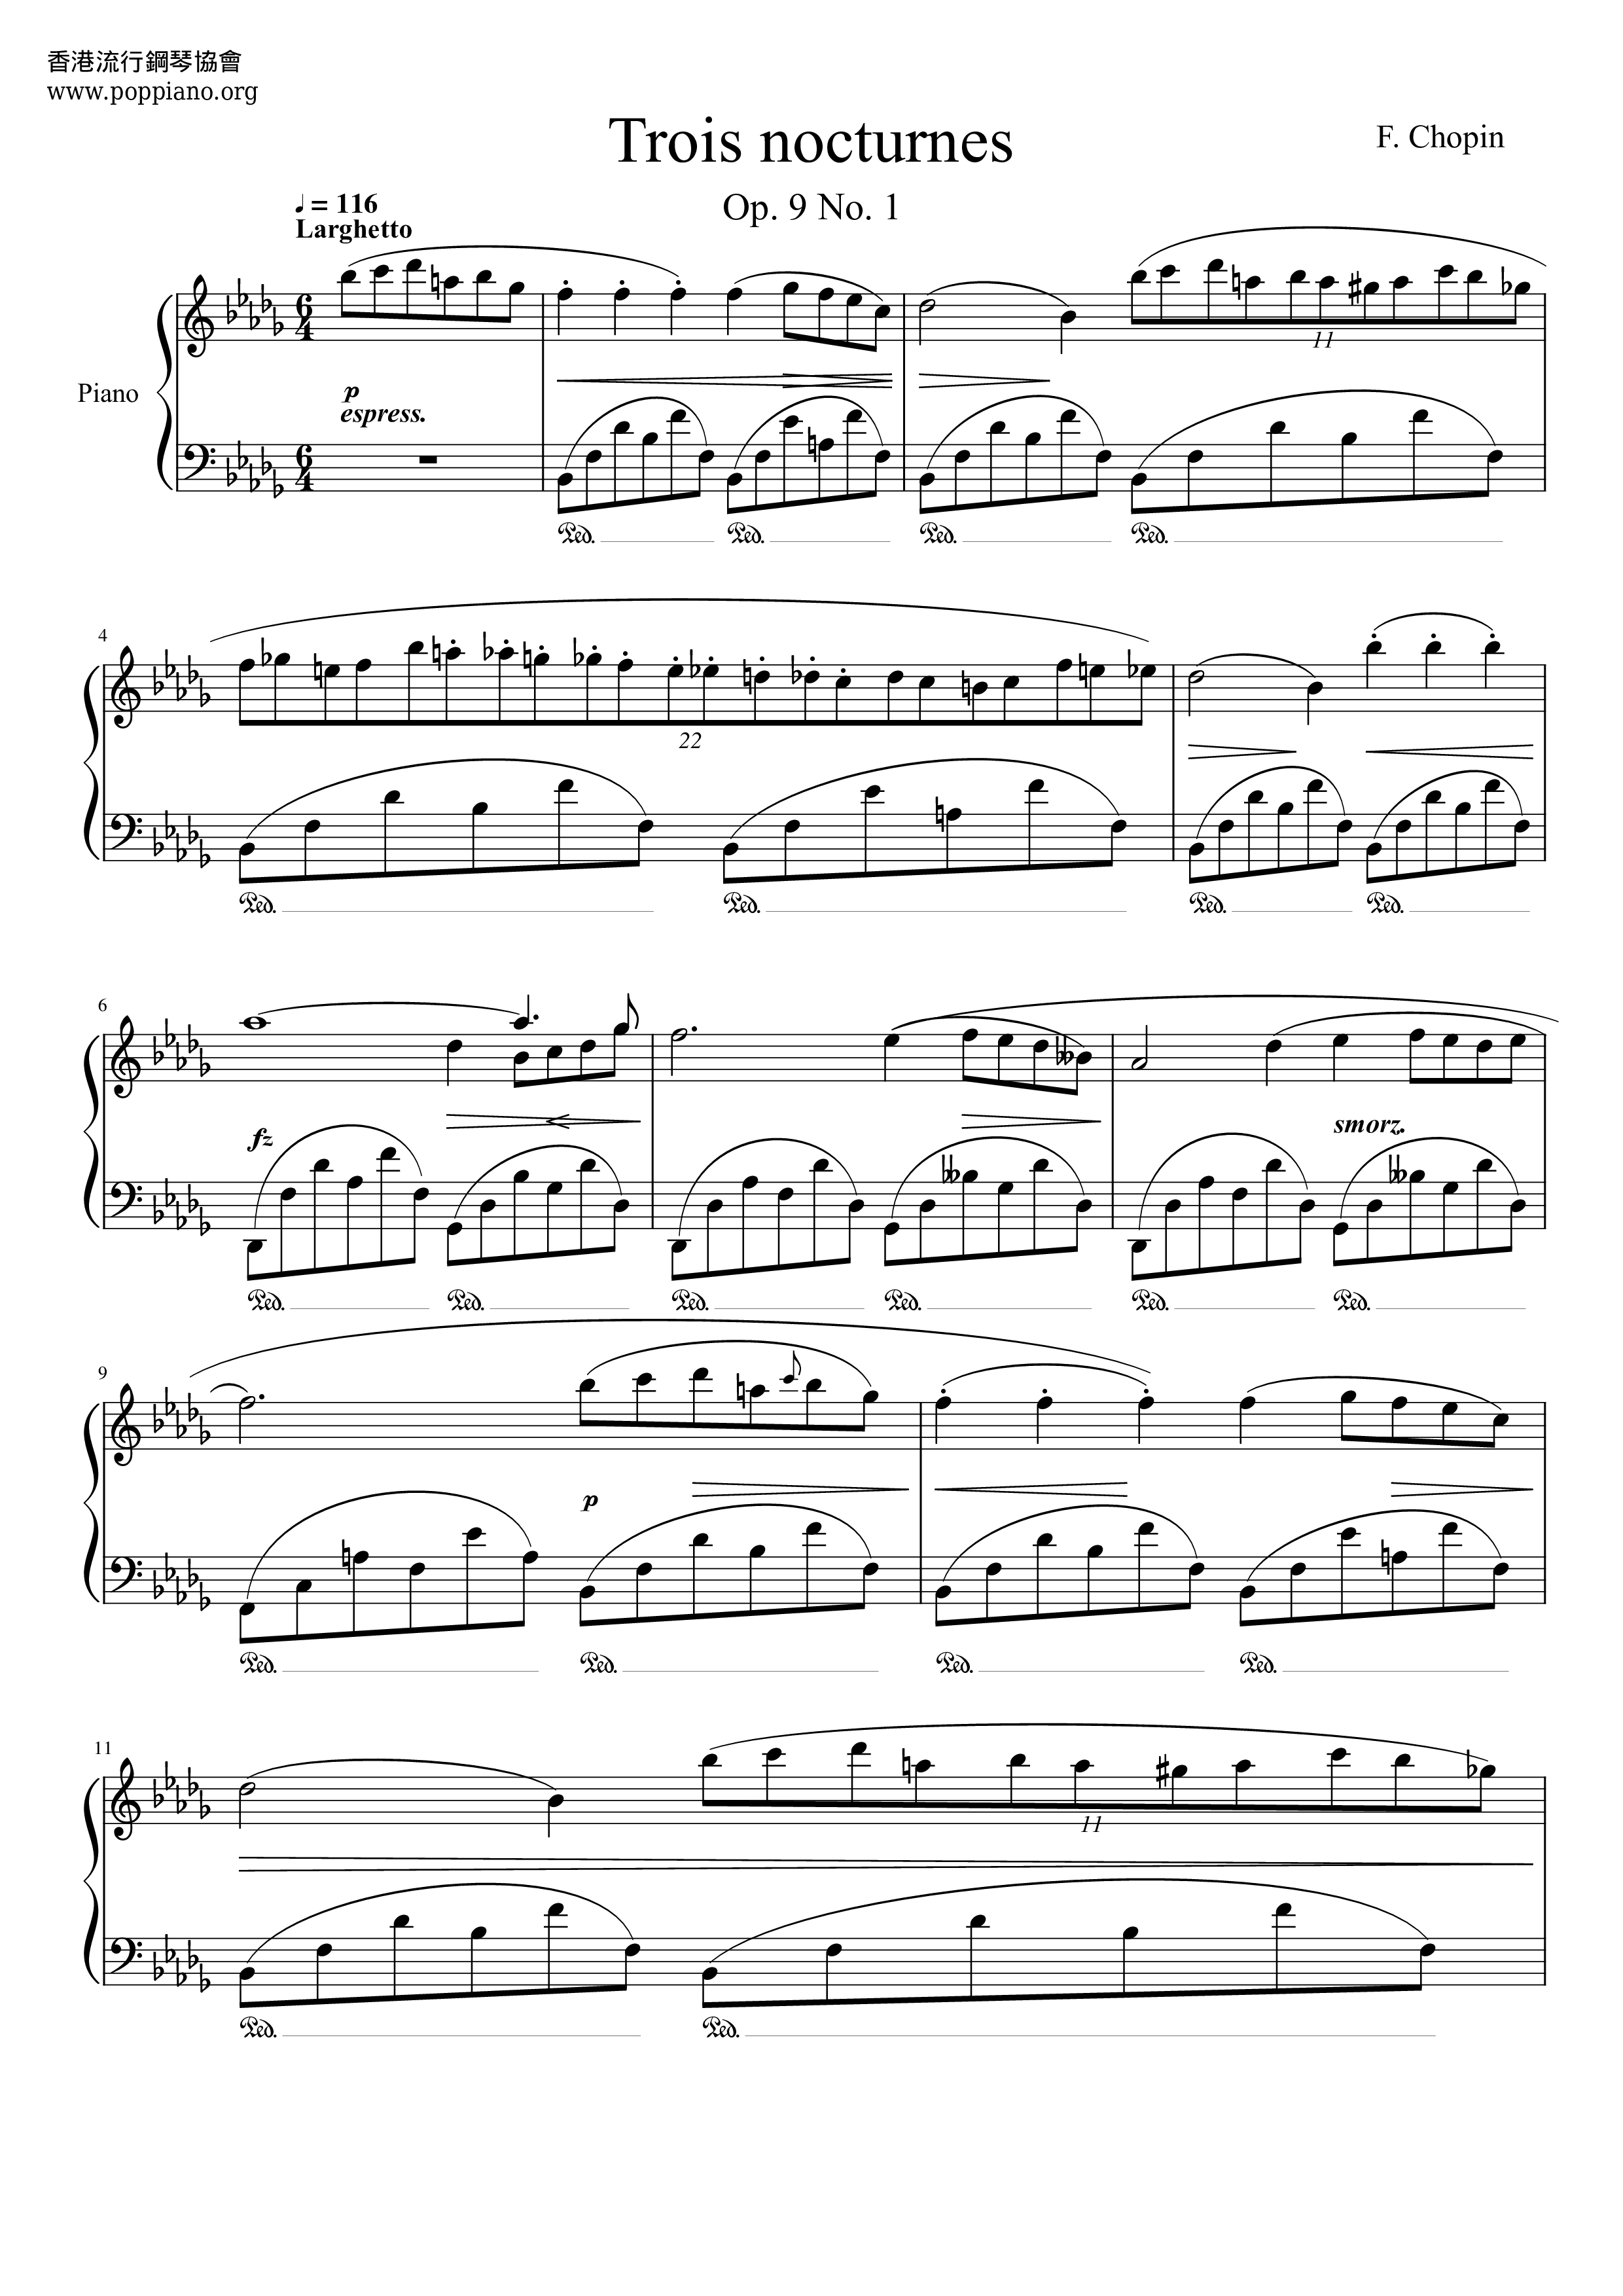 Nocturne Op. 9 No. 1 in B flat minor琴譜